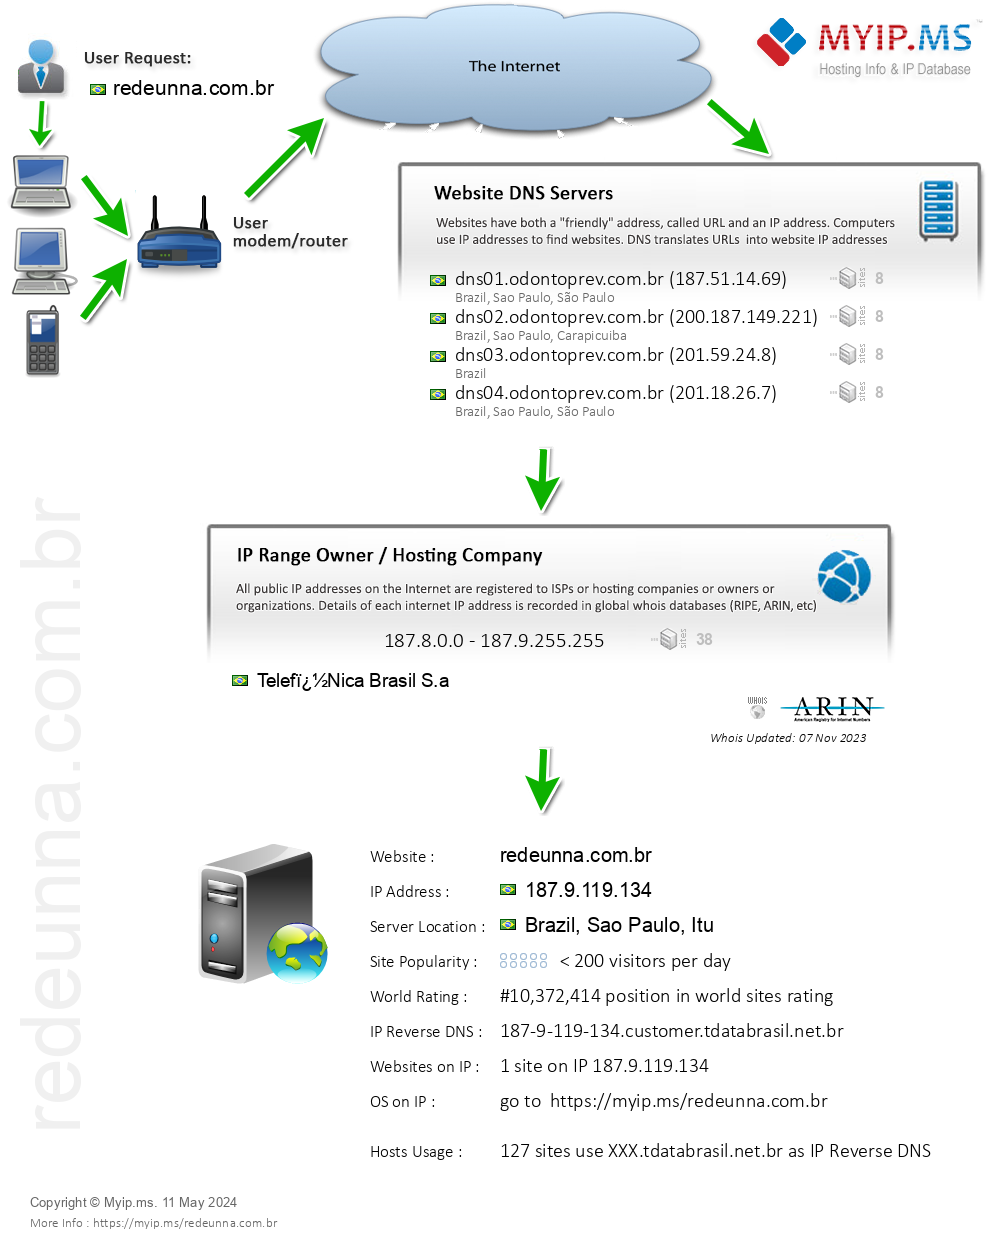 Redeunna.com.br - Website Hosting Visual IP Diagram